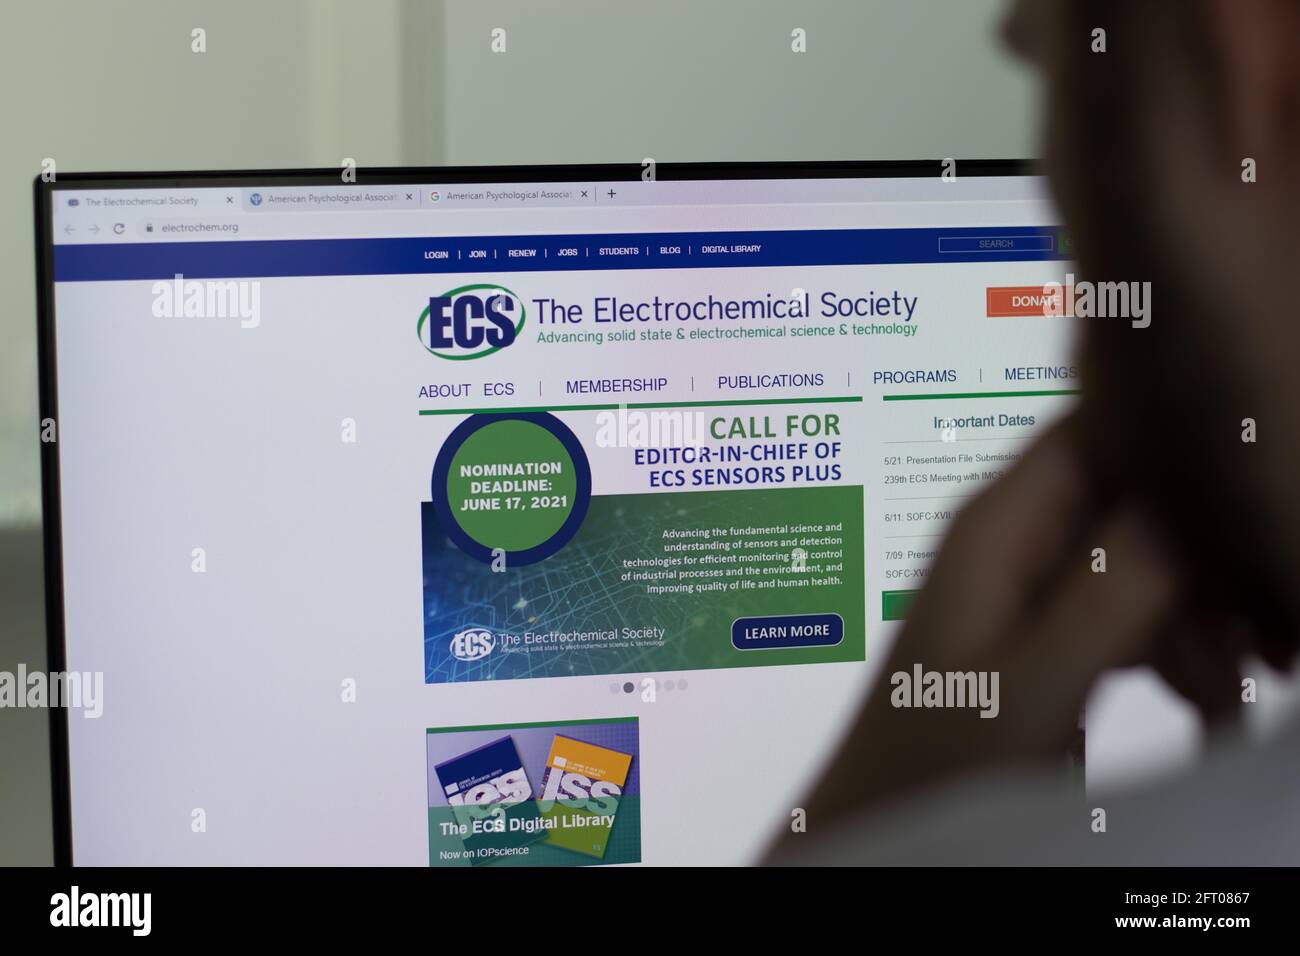 New York, USA - 1. Mai 2021: Website der Electrochemical Society ECS auf dem Bildschirm, illustrative redaktionelle Darstellung Stockfoto